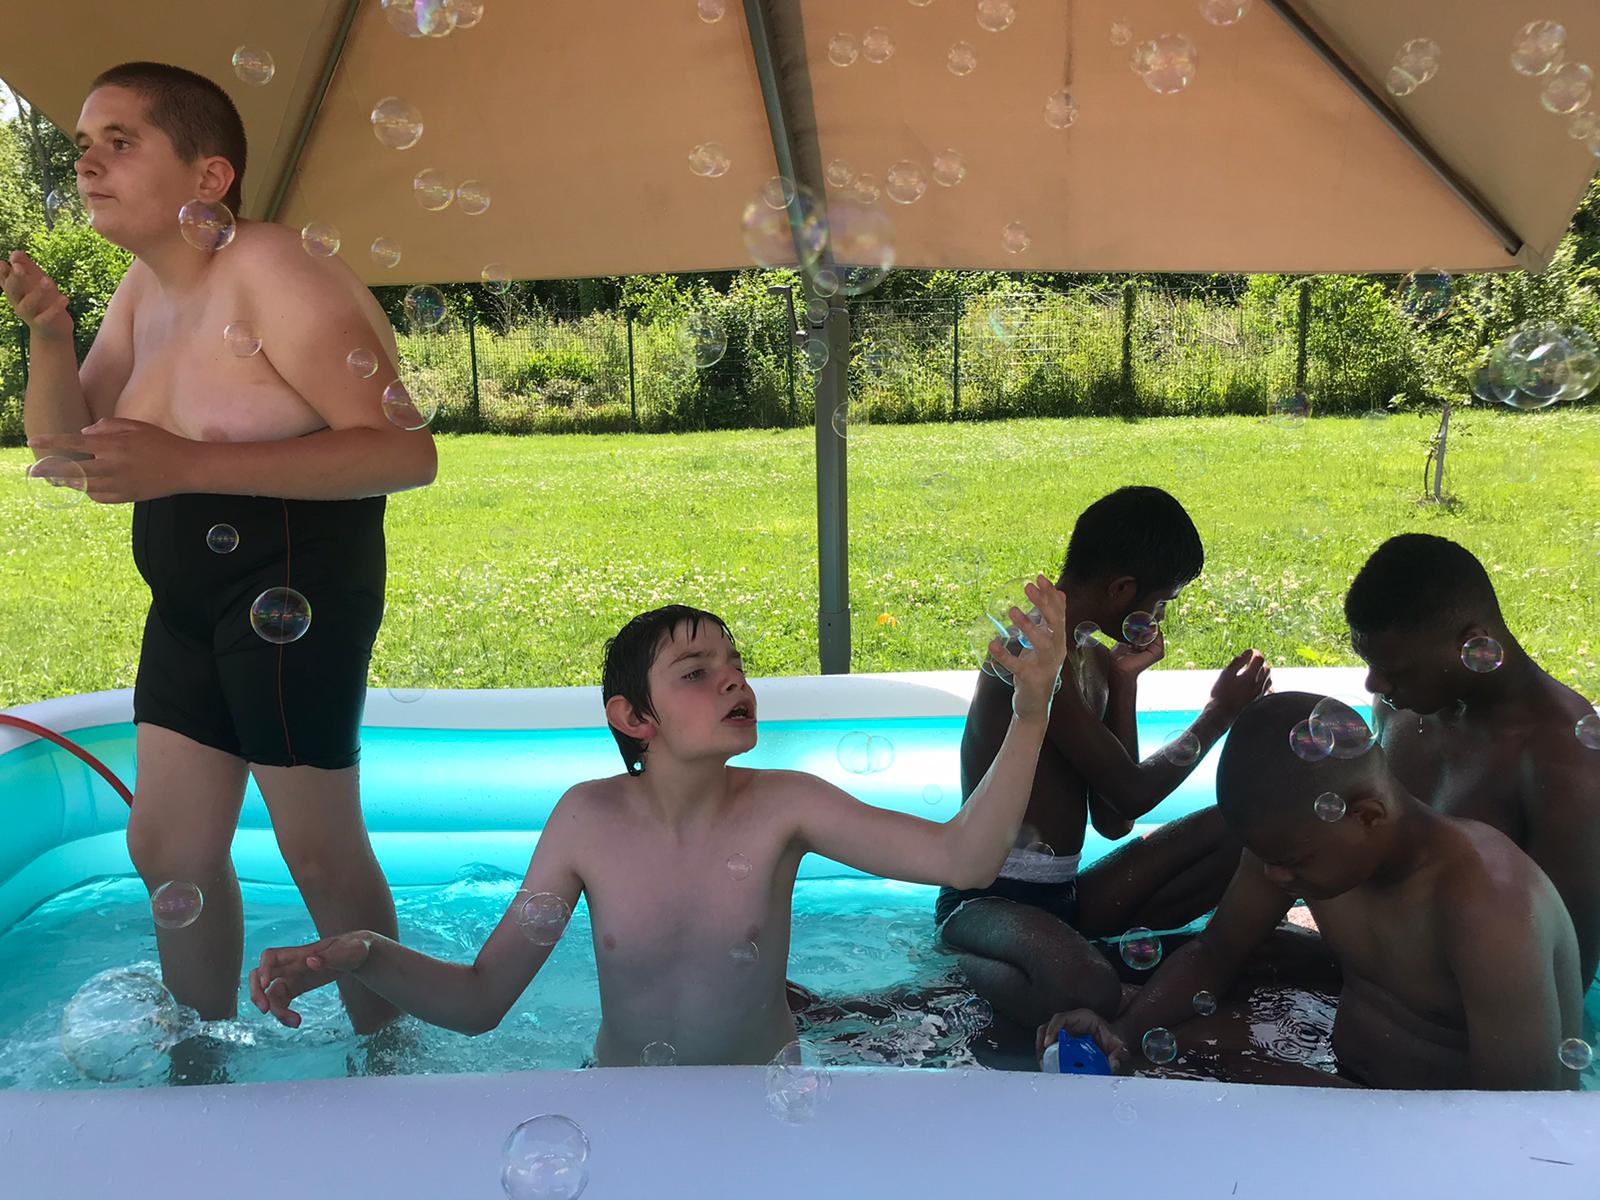 Des jeunes profitent de la piscine dans le jardin de l'IME